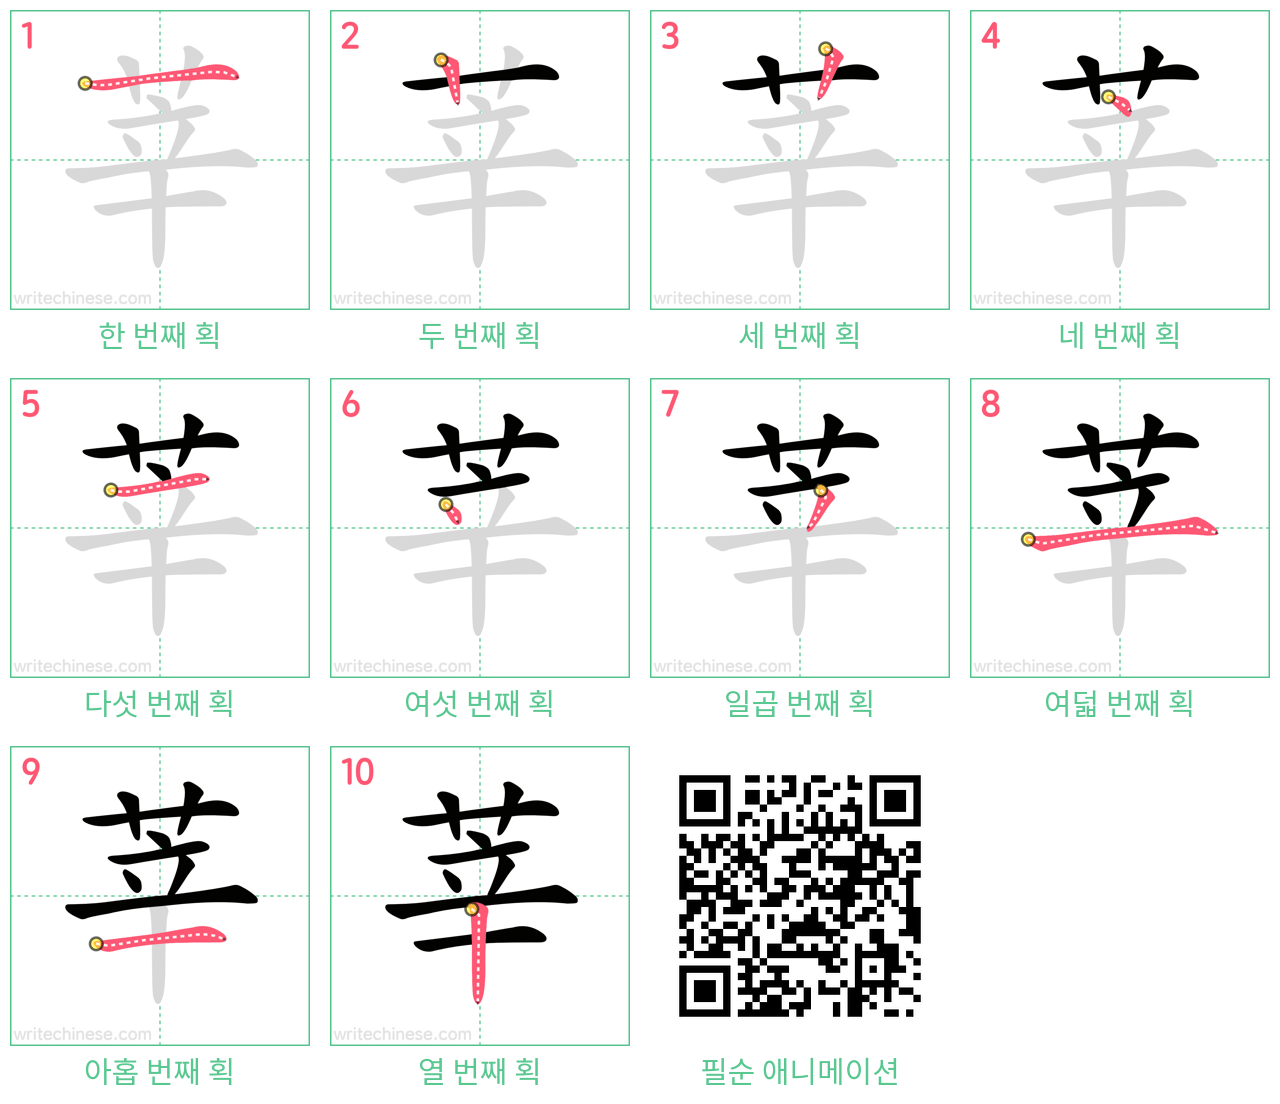 莘 step-by-step stroke order diagrams